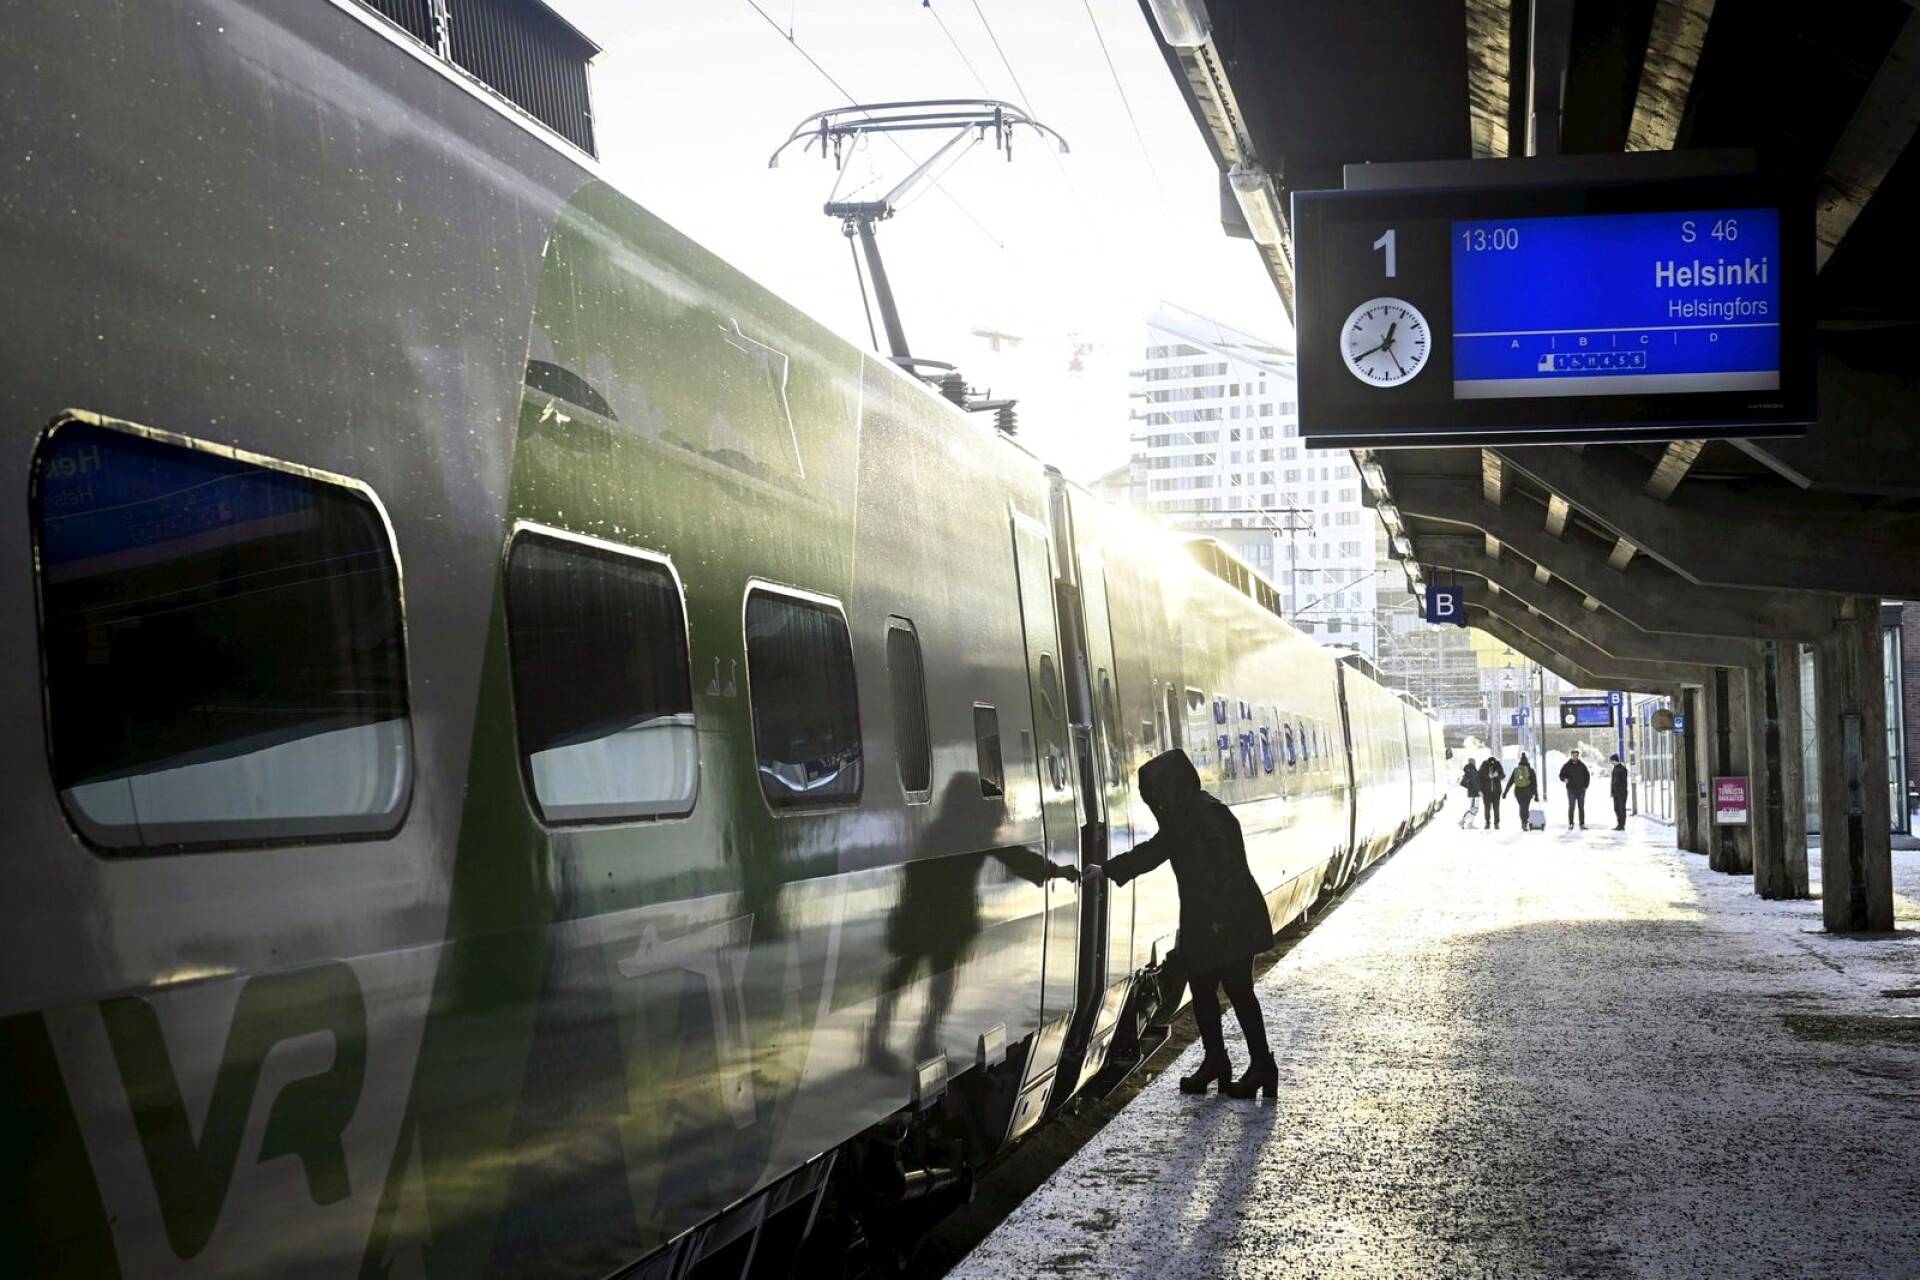 В Финляндии из-за снега и морозов отменены поезда дальнего сообщения
Фото: Emmi Korhonen / Lehtikuva